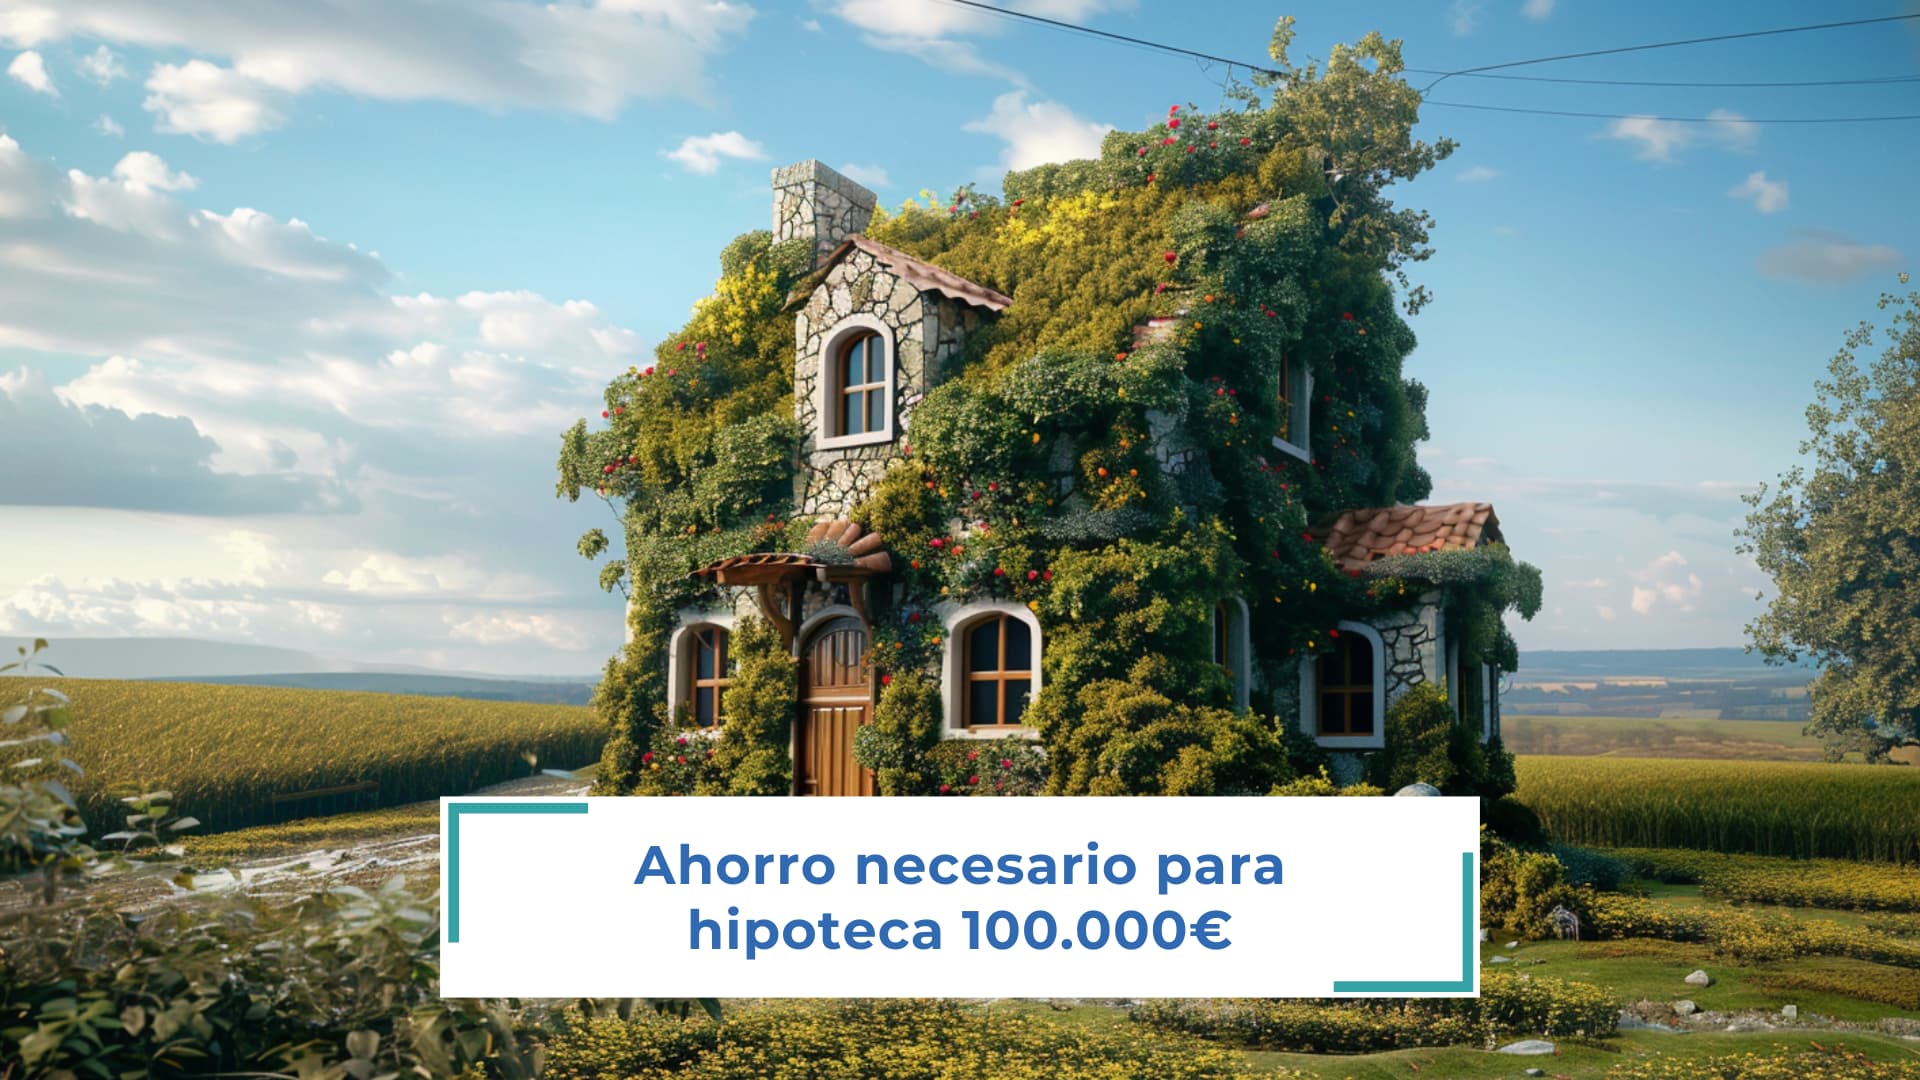 Ahorro necesario para hipoteca 100.000€